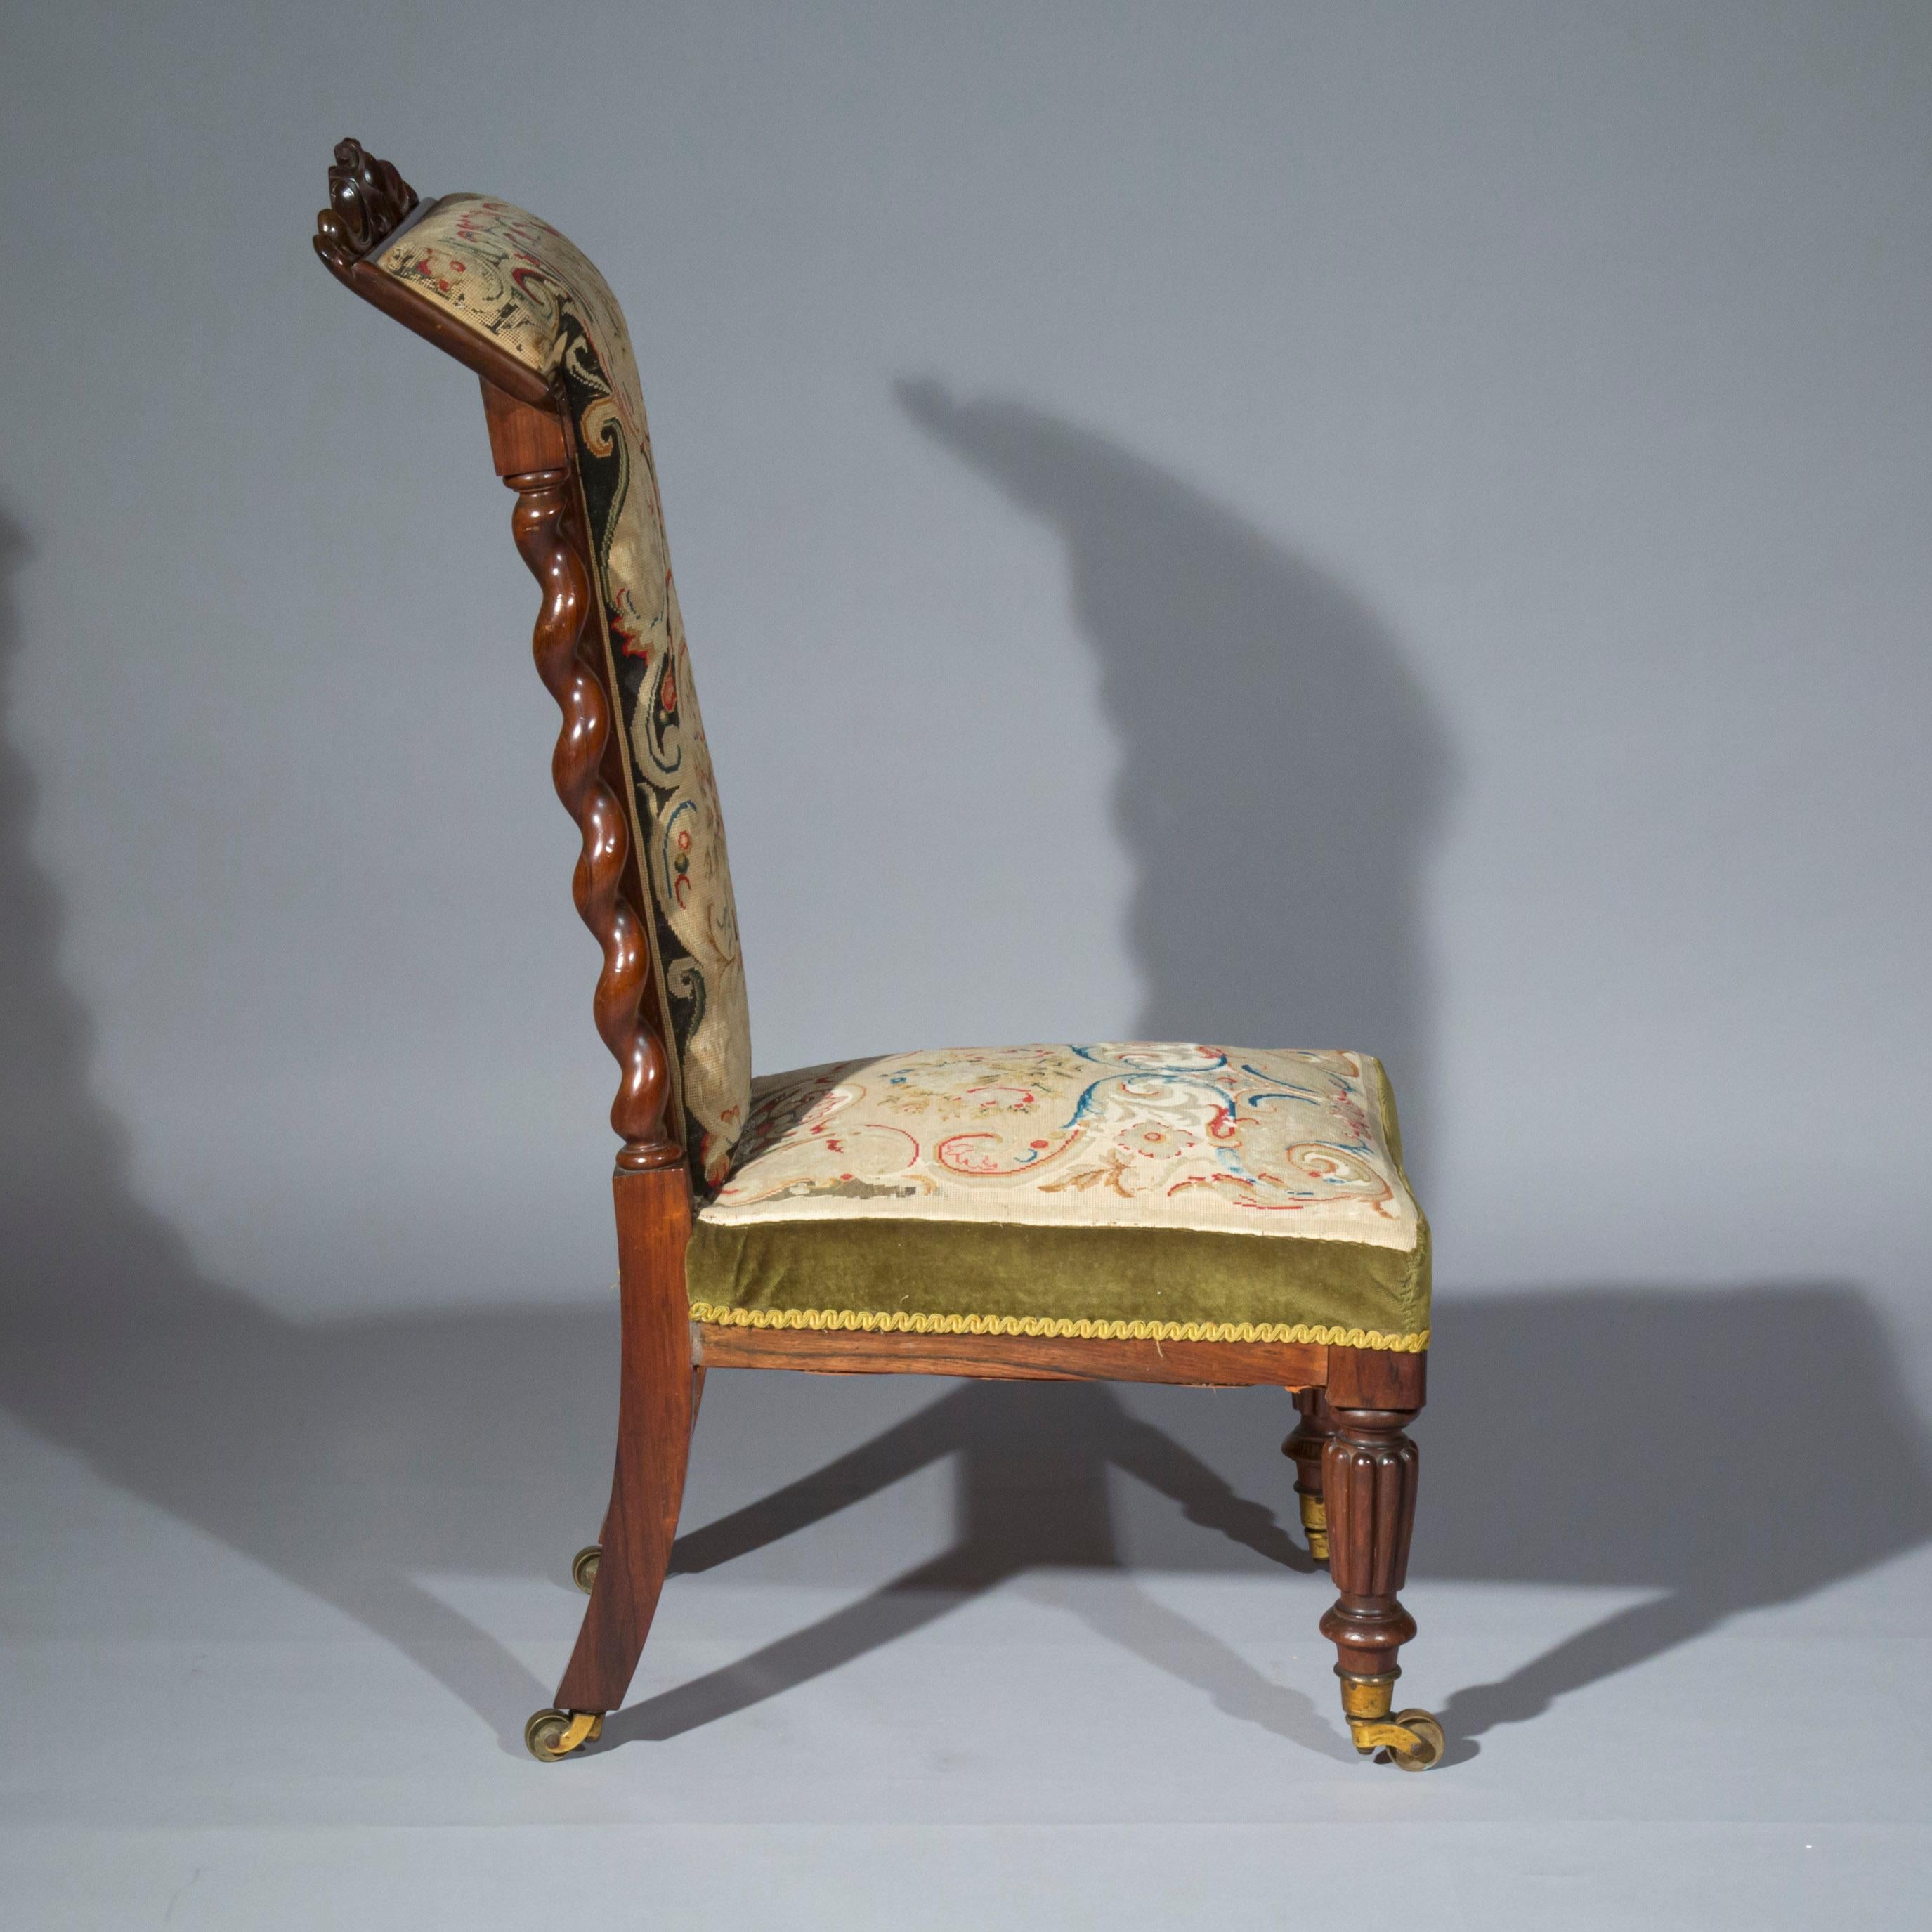 Ein interessanter Pantoffelstuhl aus dem frühen 19. Jahrhundert mit kleinen Proportionen, der die ursprüngliche Polsterung in Handarbeit beibehält, englisch, um 1835.

Der Stuhl bietet eine nützliche und vielseitige niedrige Sitzgelegenheit, er kann